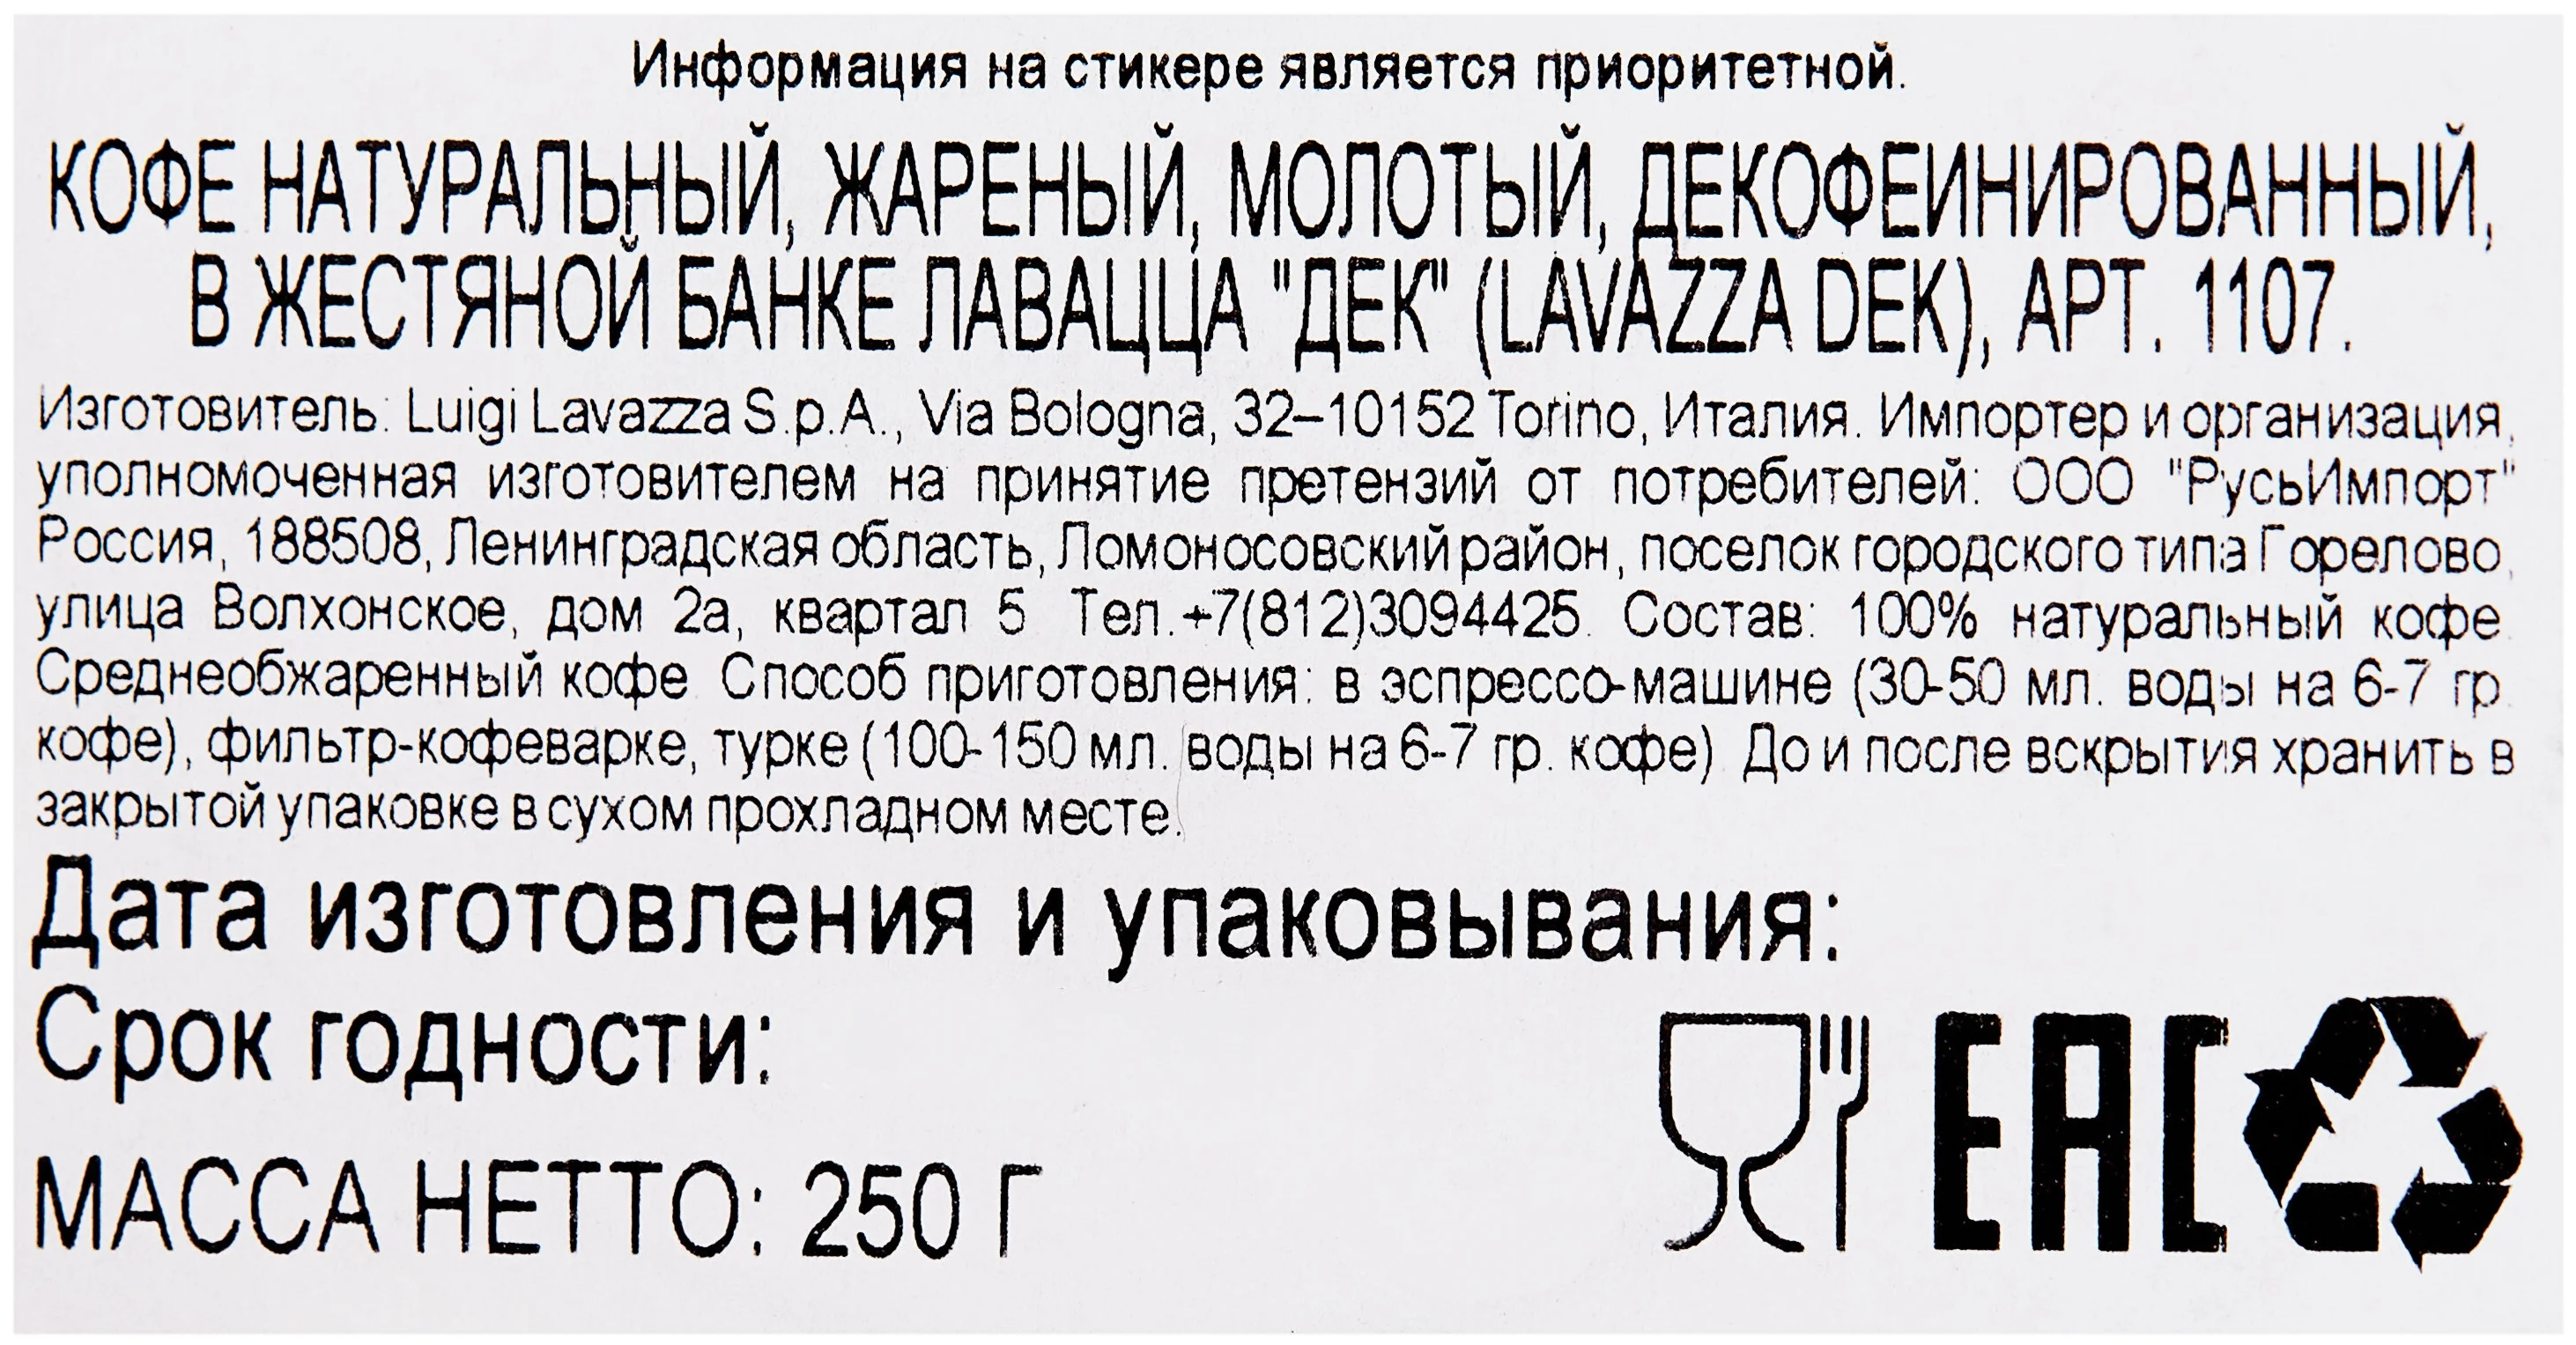 Lavazza Caffe Decaffeinato жестяная банка - упаковка: металлическая банка